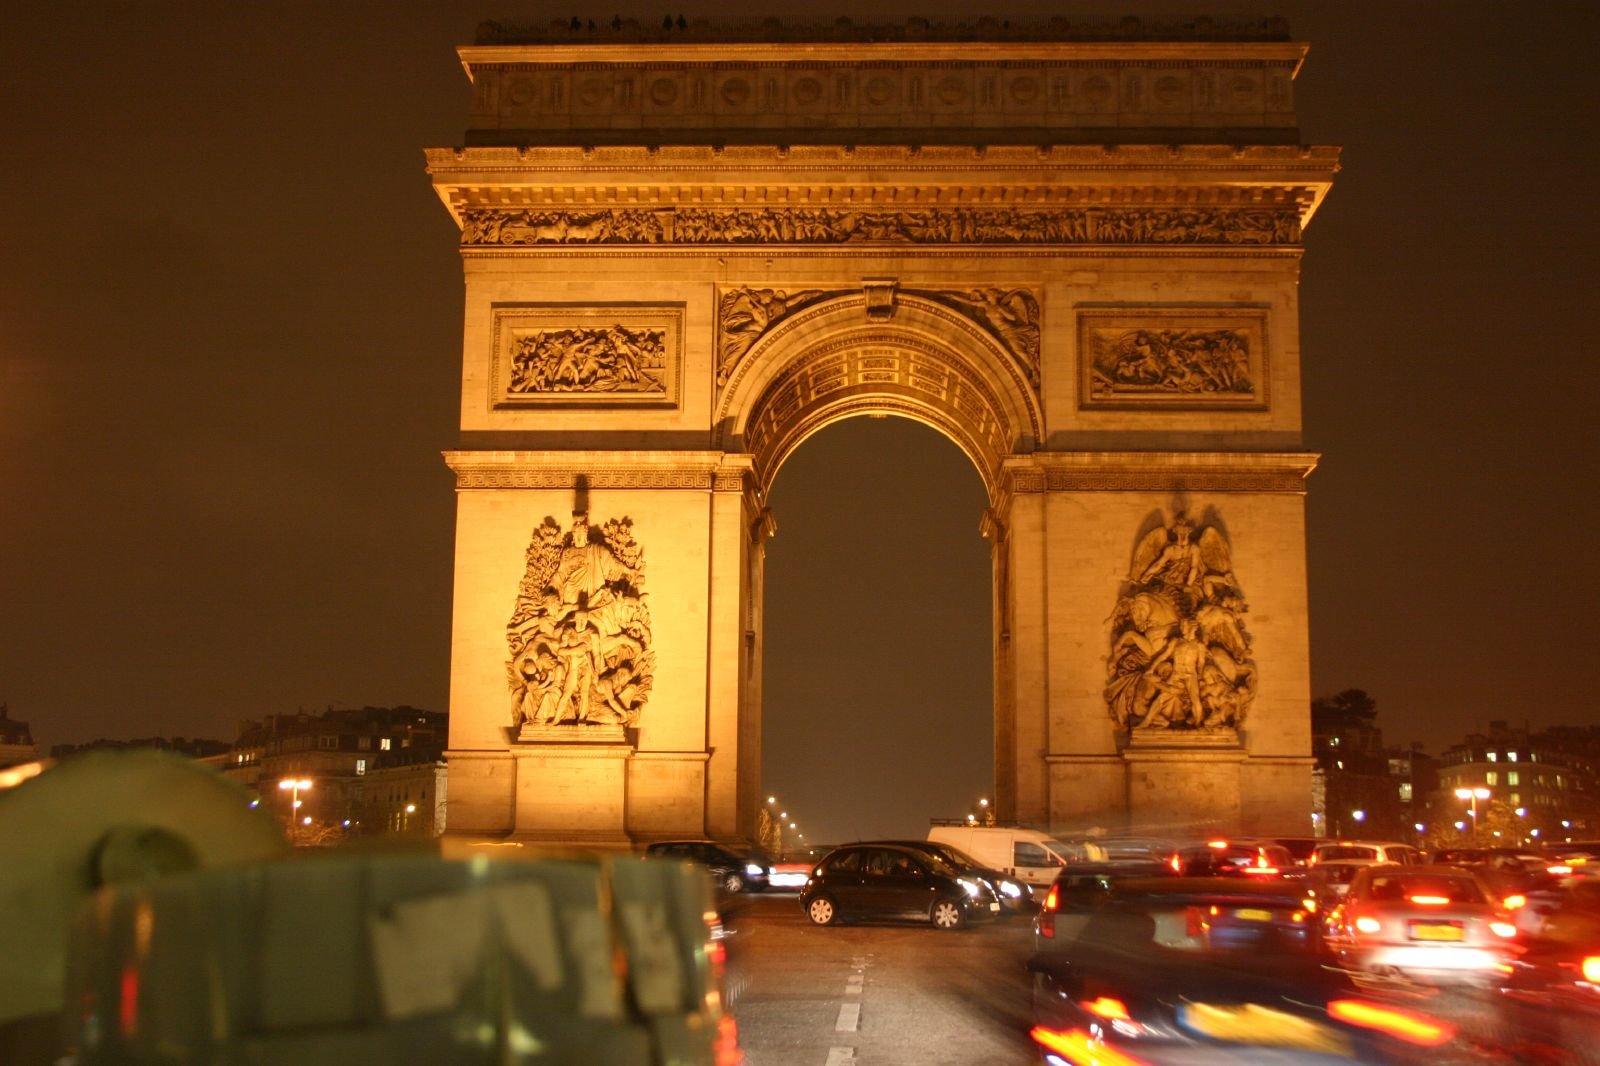 Iconic Arc de Triomphe monument in Paris, France.